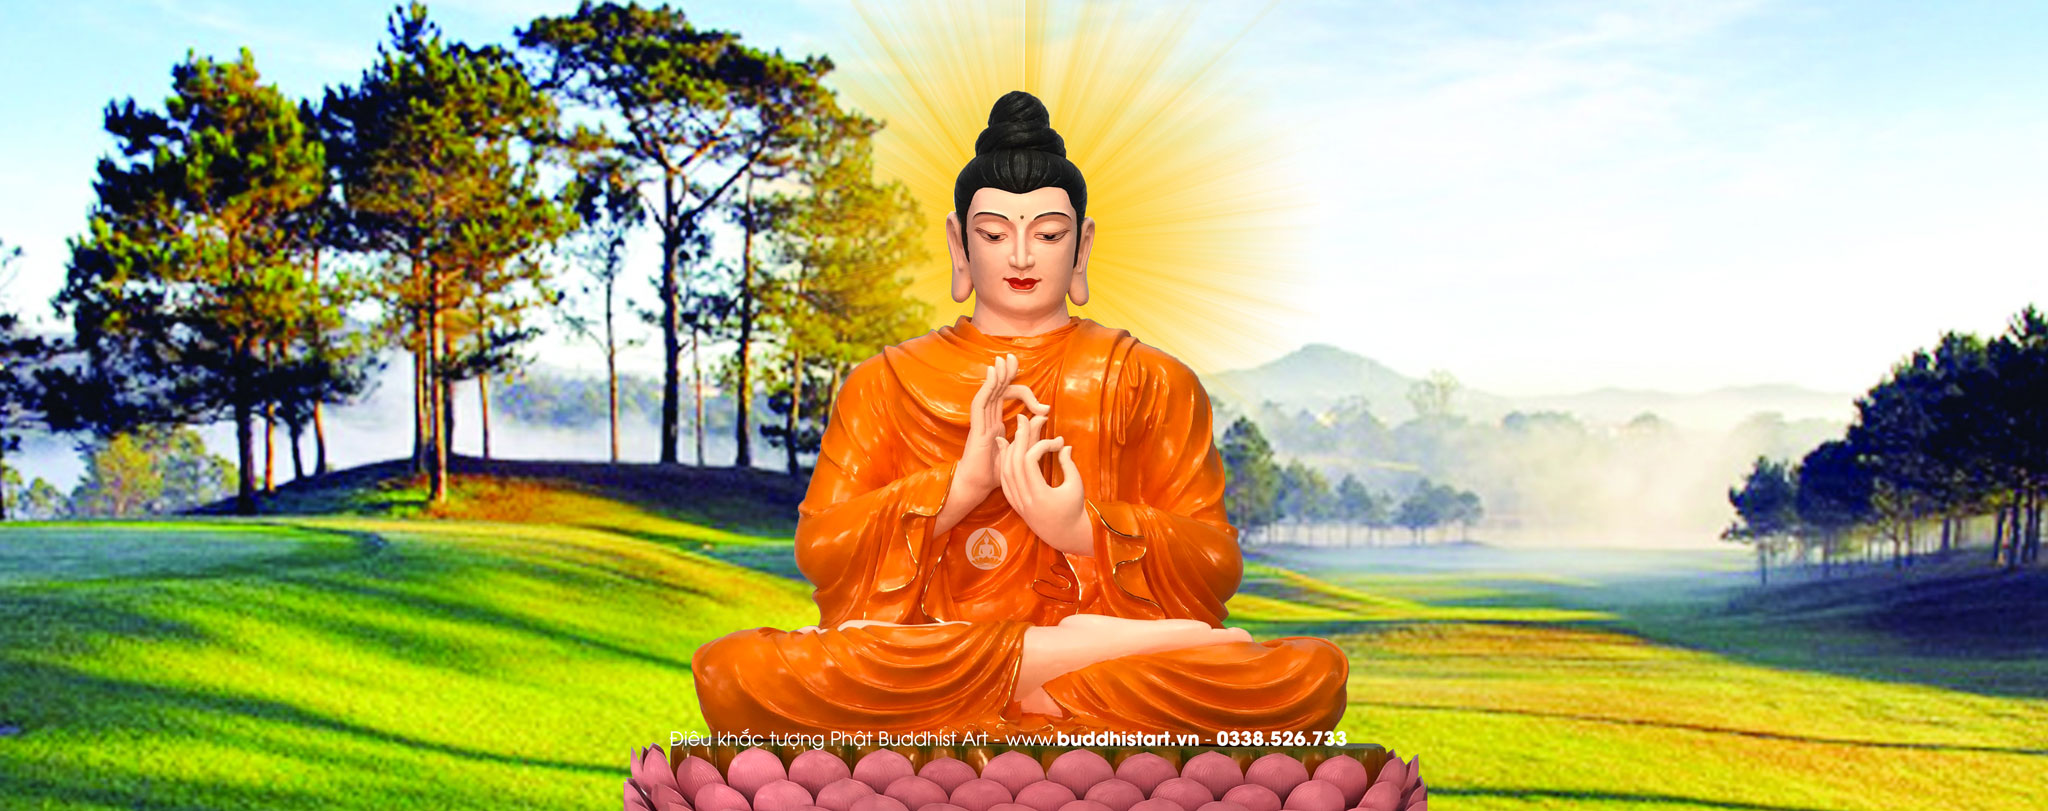 Hình Phật Đẹp Chất lượng cao